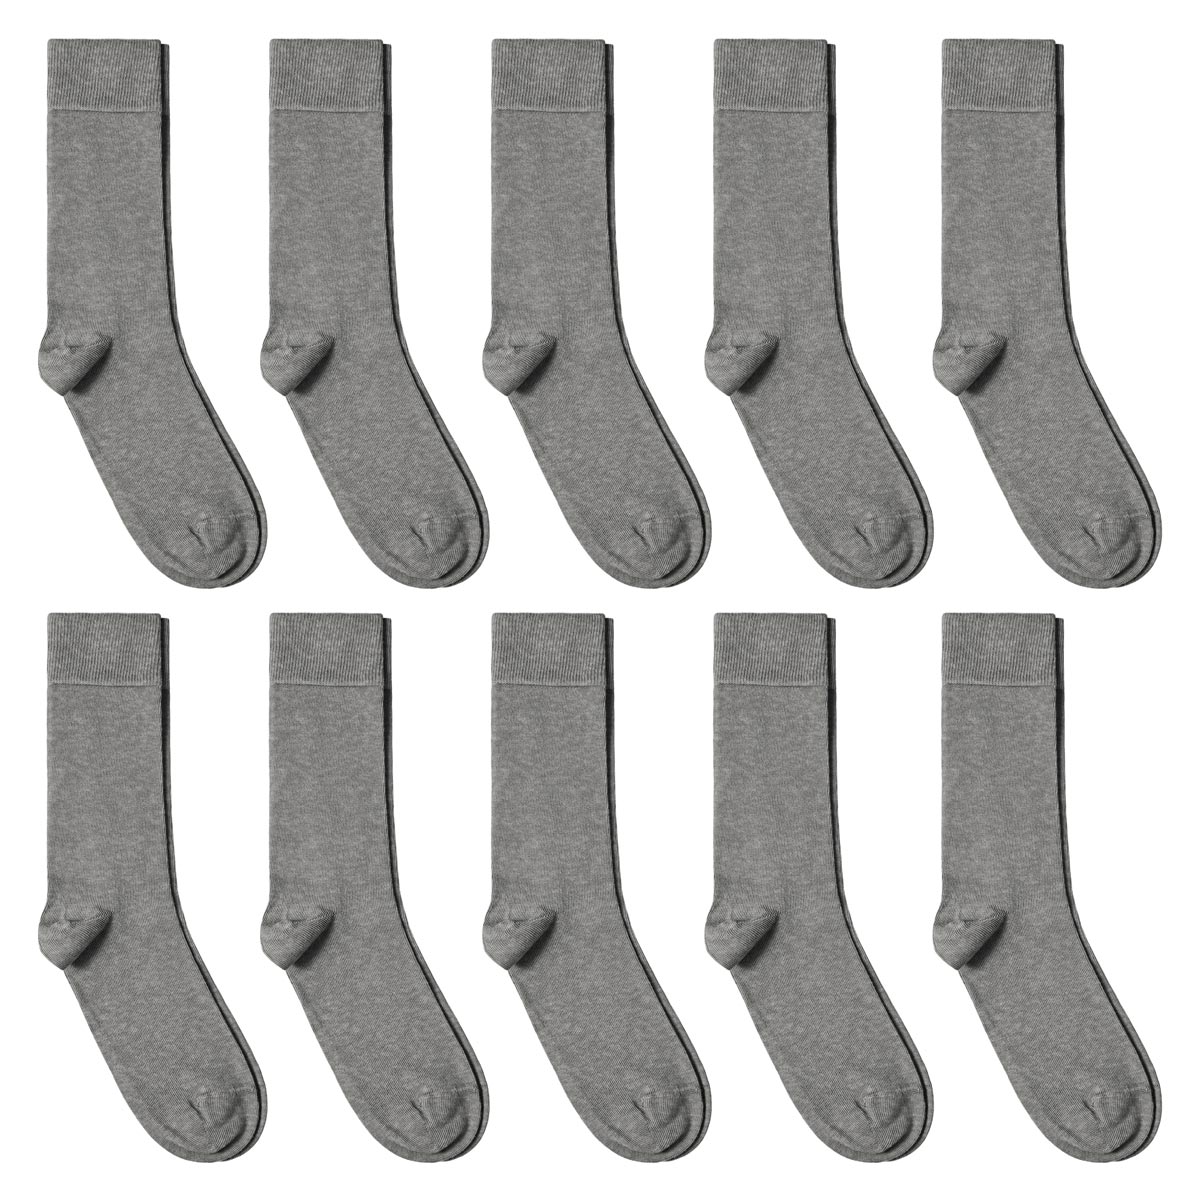 CH-00785_A12-1--_Lot-10-paires-chaussettes-homme-gris-chine